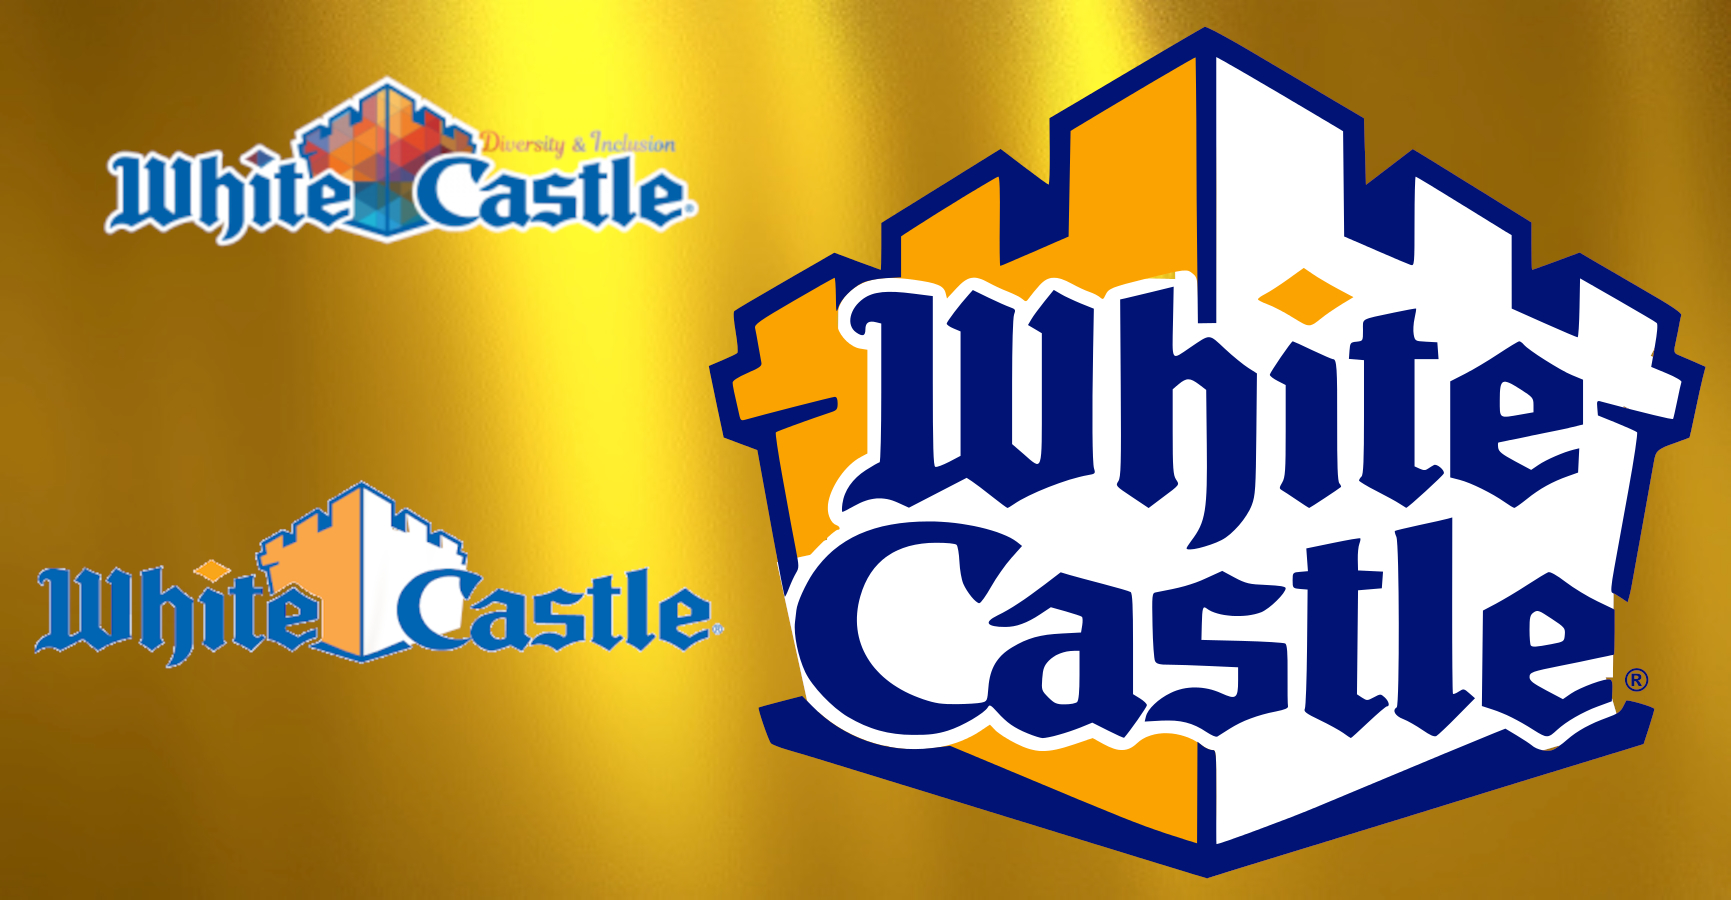 White Castle logos.jpg